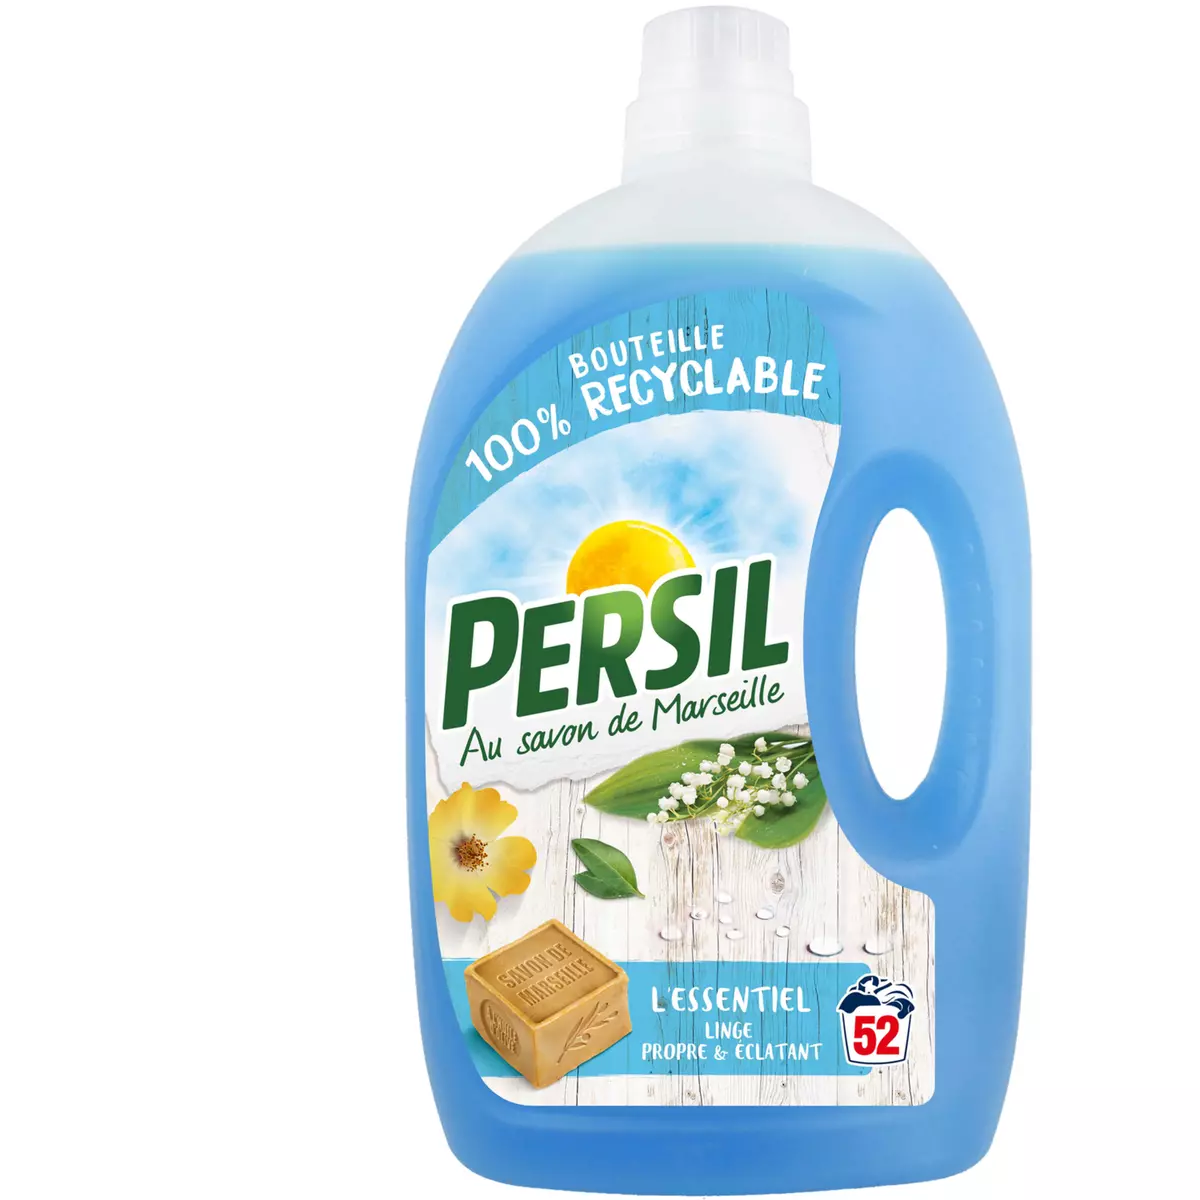 PERSIL Lessive liquide linge propre & éclatant 52 lavages 2,6l